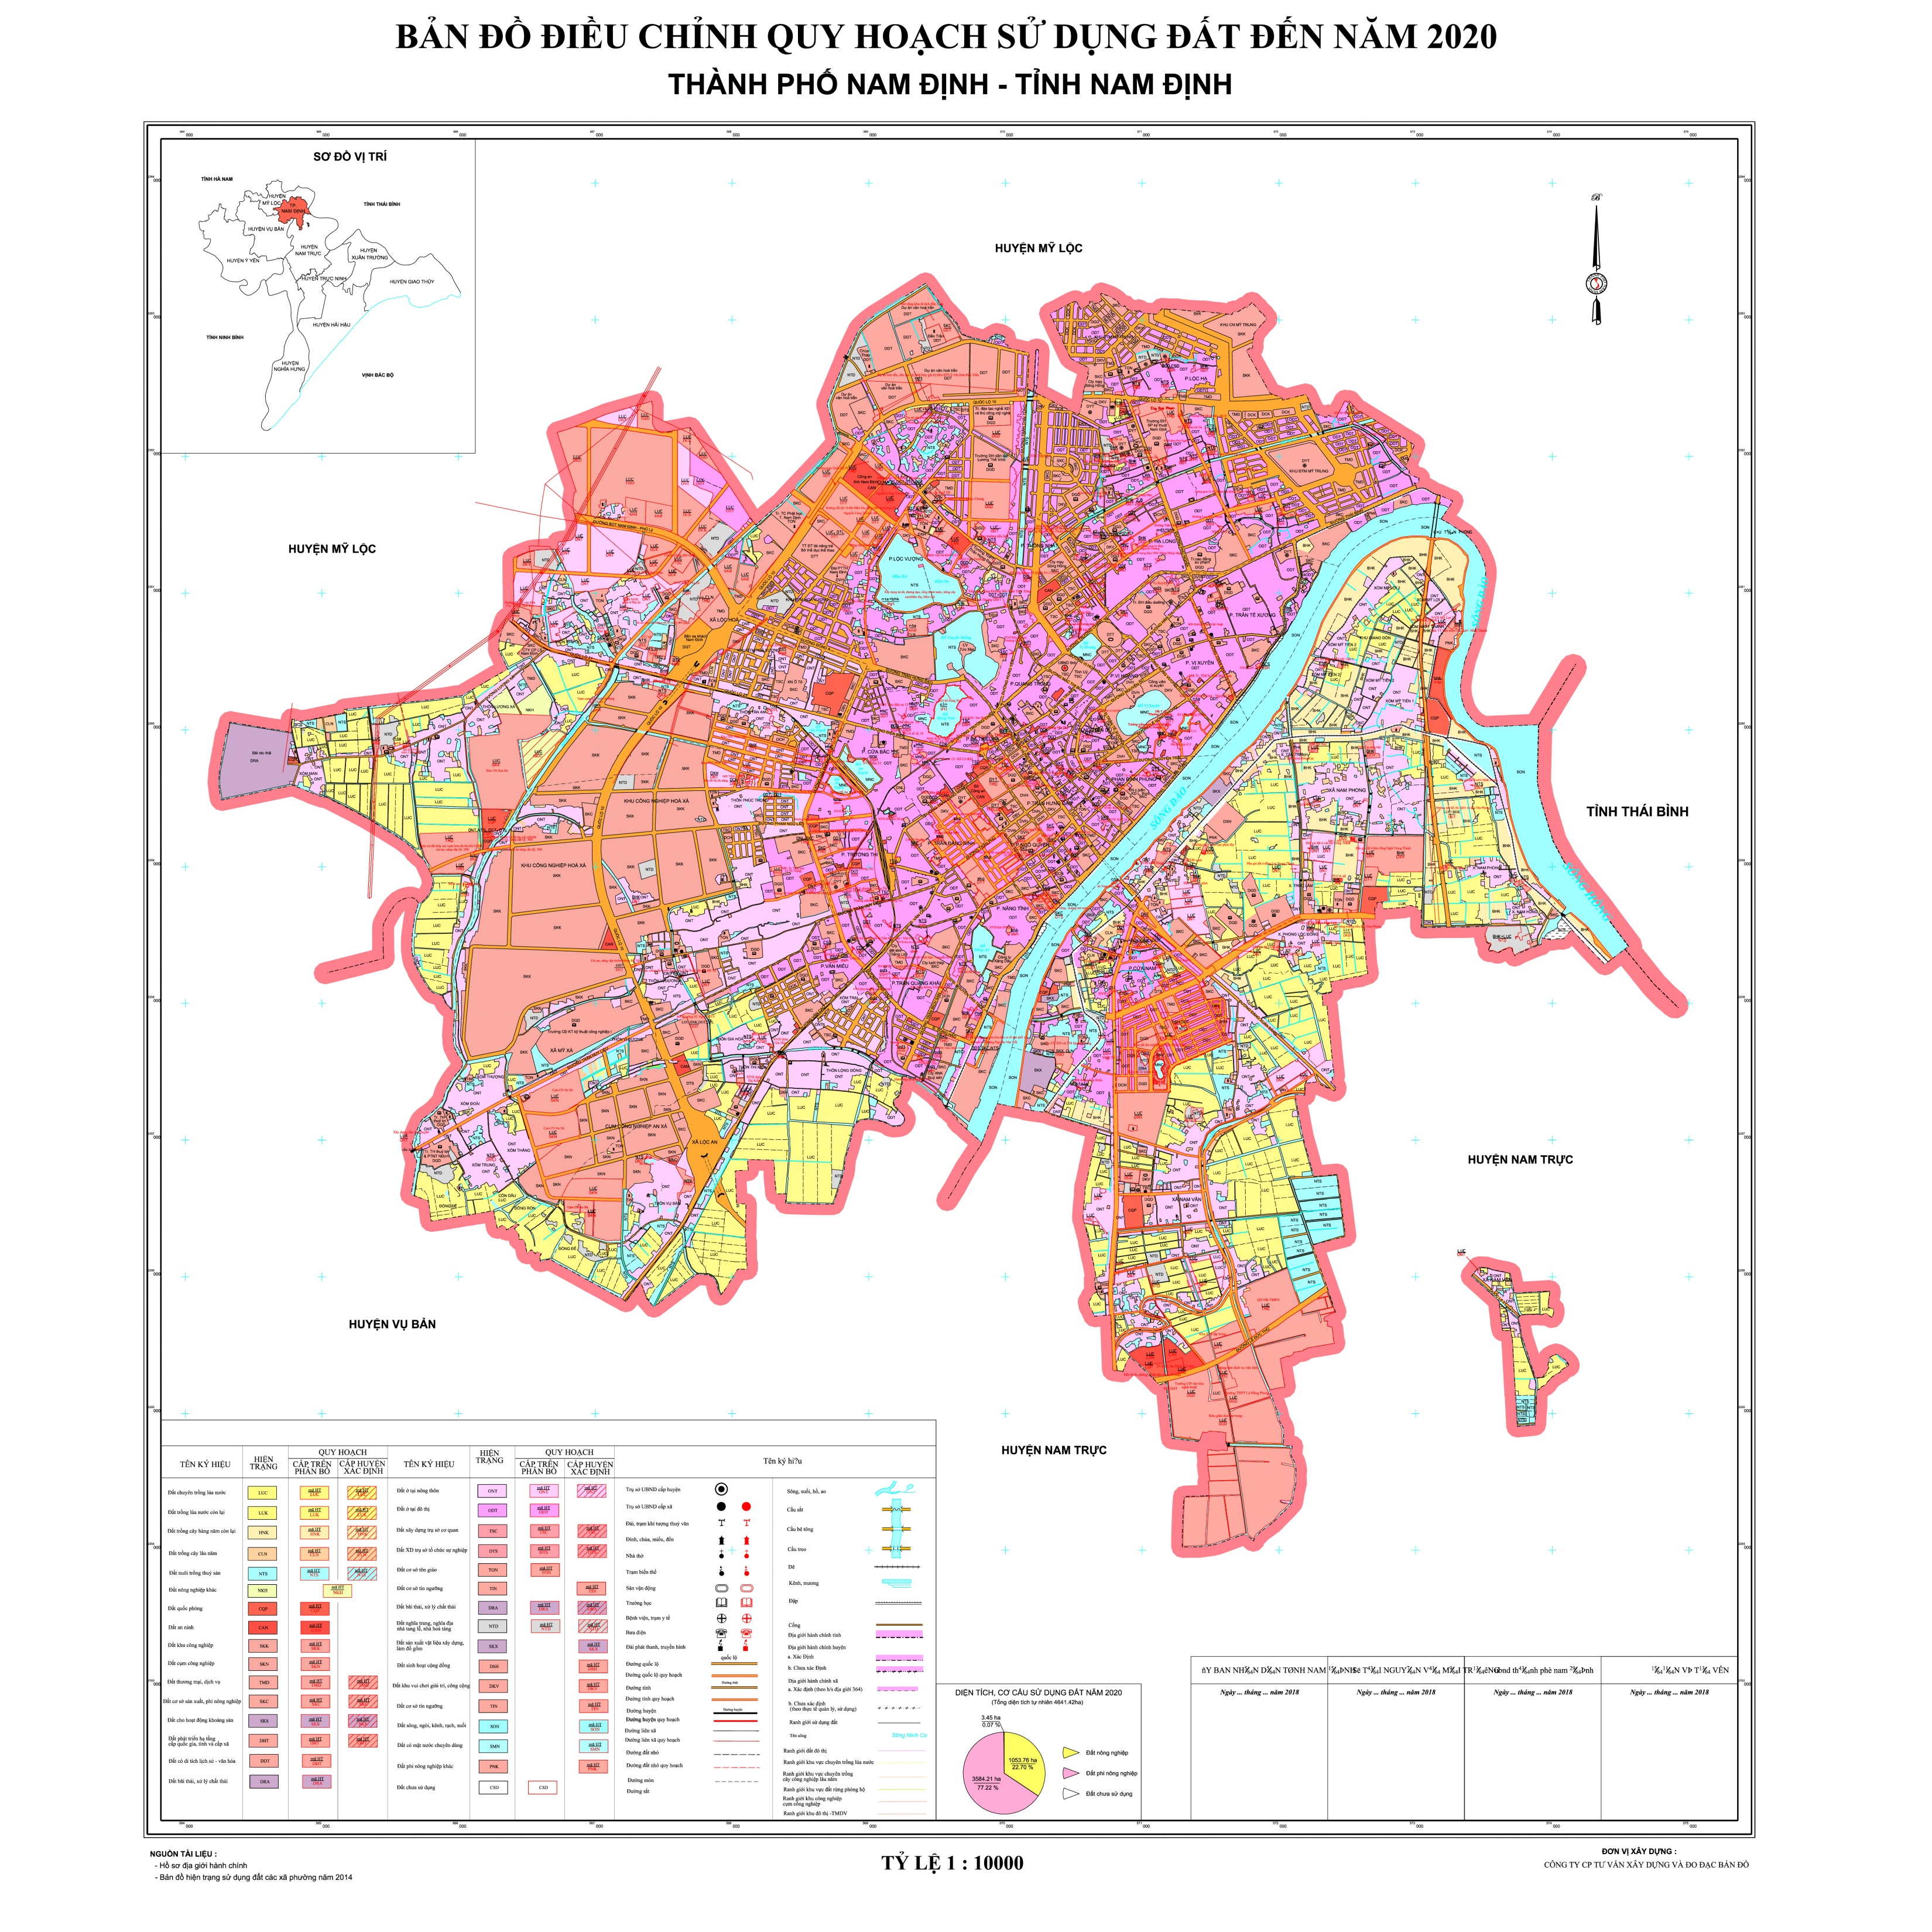 Cùng xem bản đồ hành chính tỉnh Nam Định mới nhất để cập nhật các thông tin về thành phố này nhé. Vùng đất đầy tiềm năng với nhiều cơ hội phát triển đang chờ đón bạn khám phá.